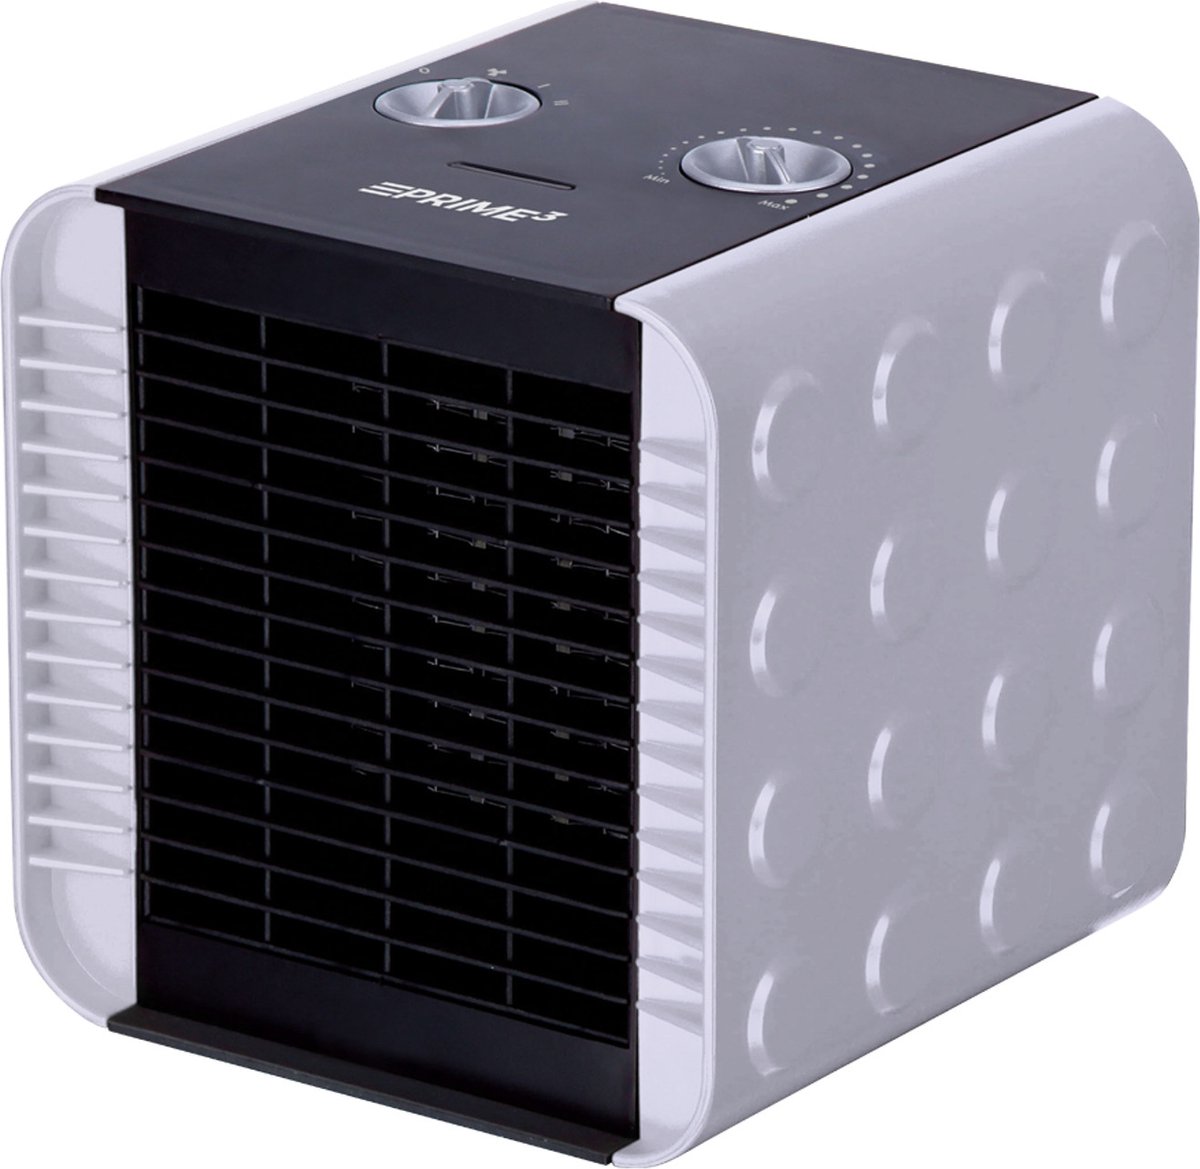 Prime3 - PTC-ventilatorverwarming keramisch verwarmingselement 1500W - Grijs